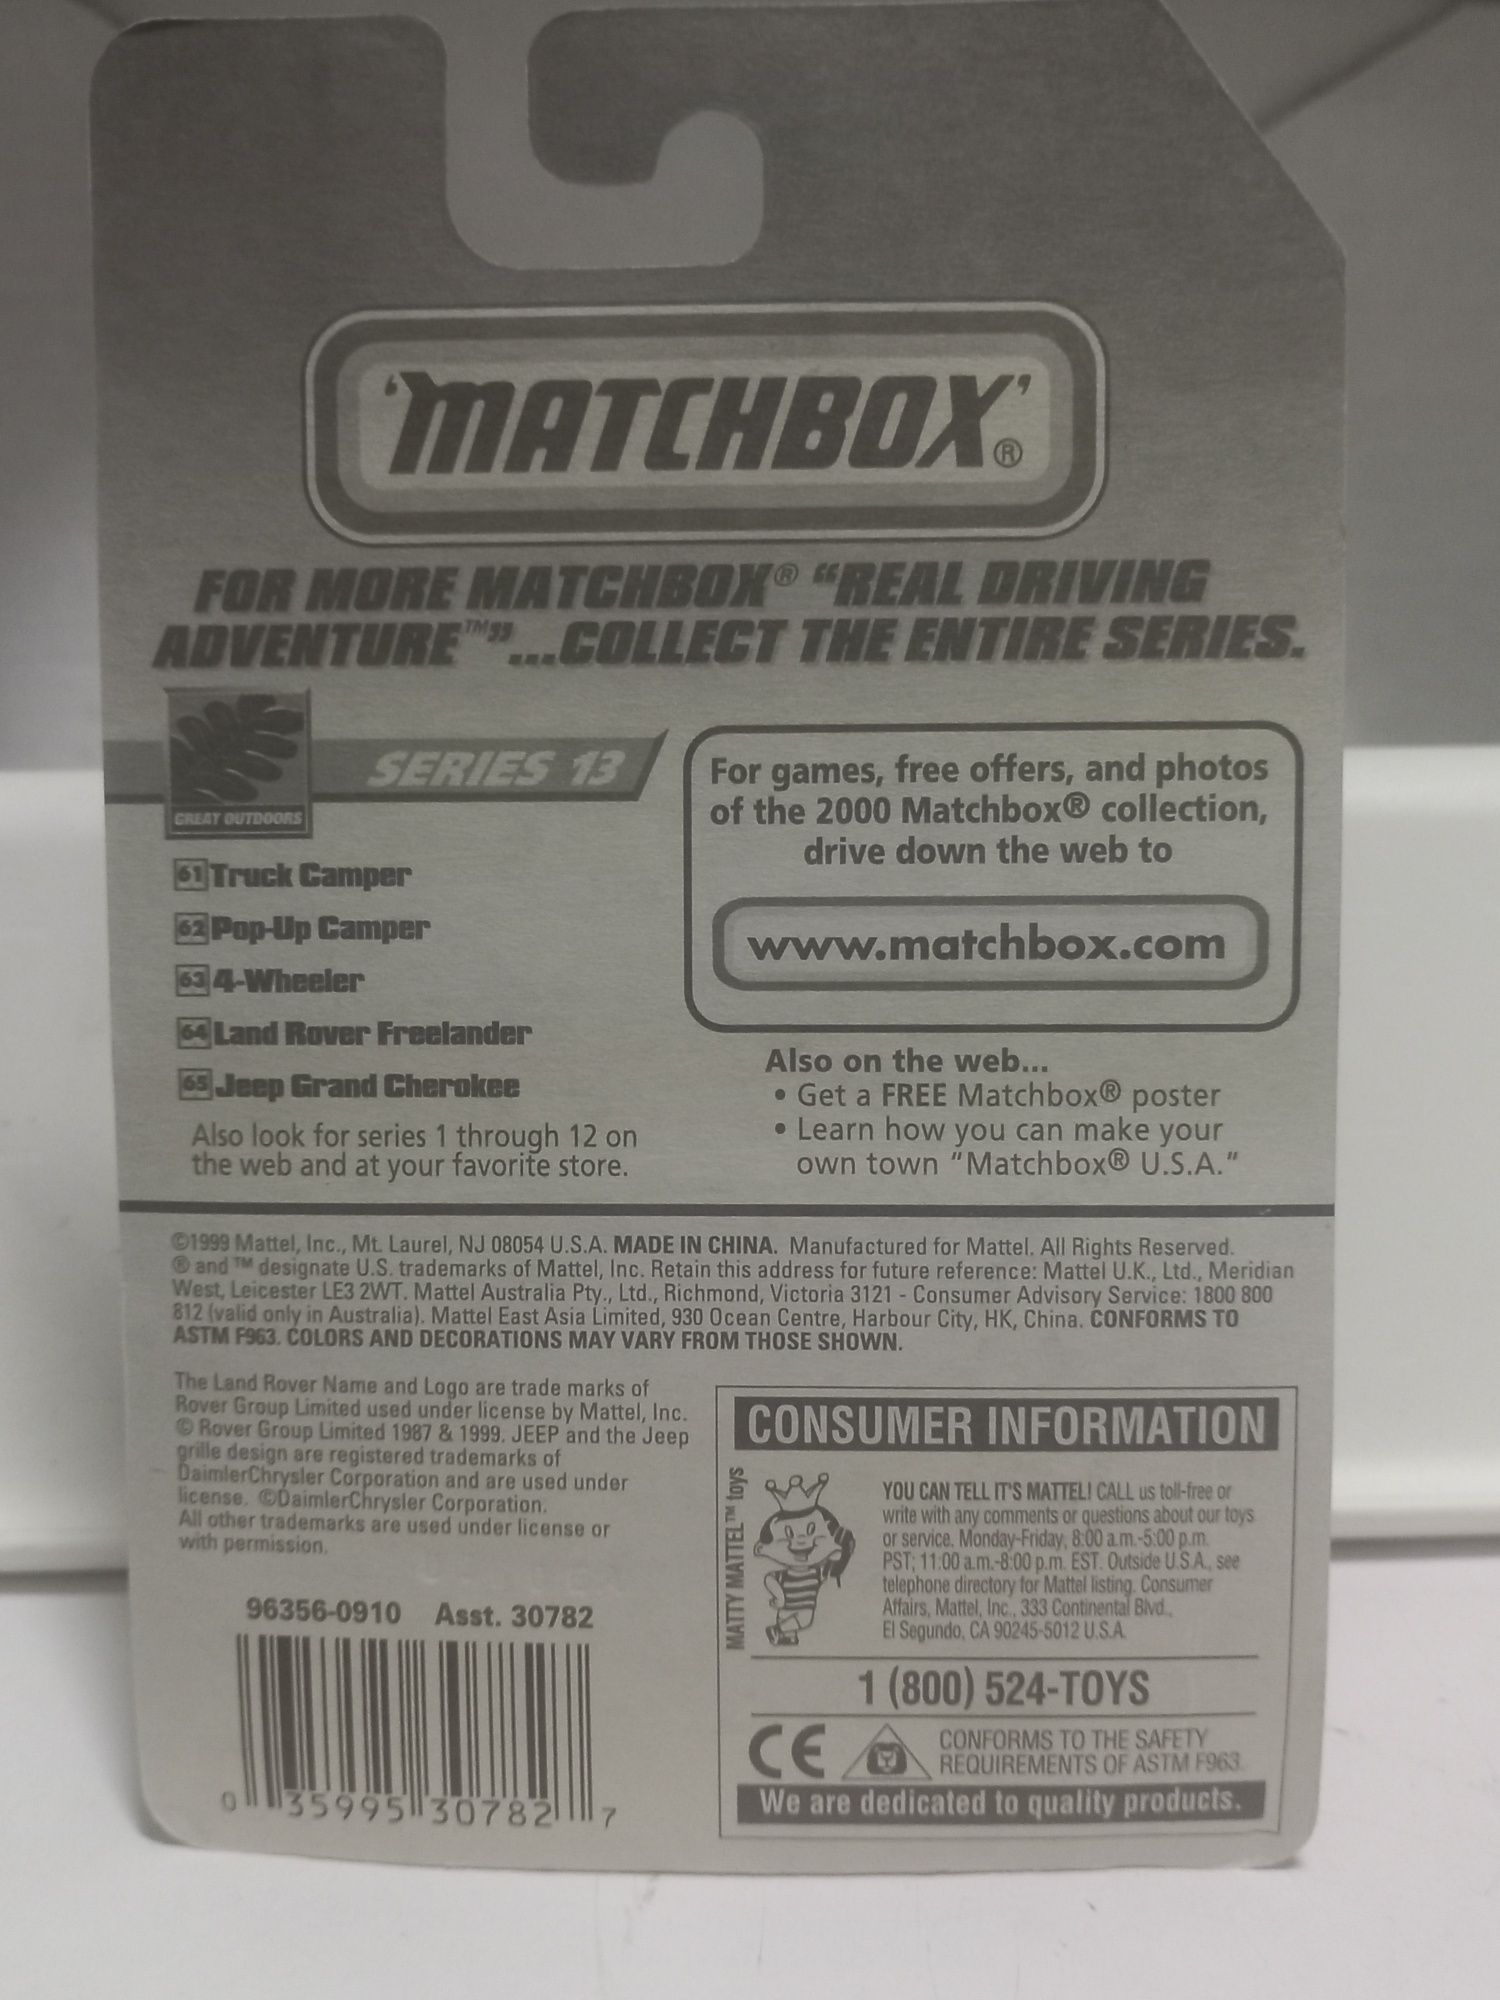 Matchbox 4 wheeler